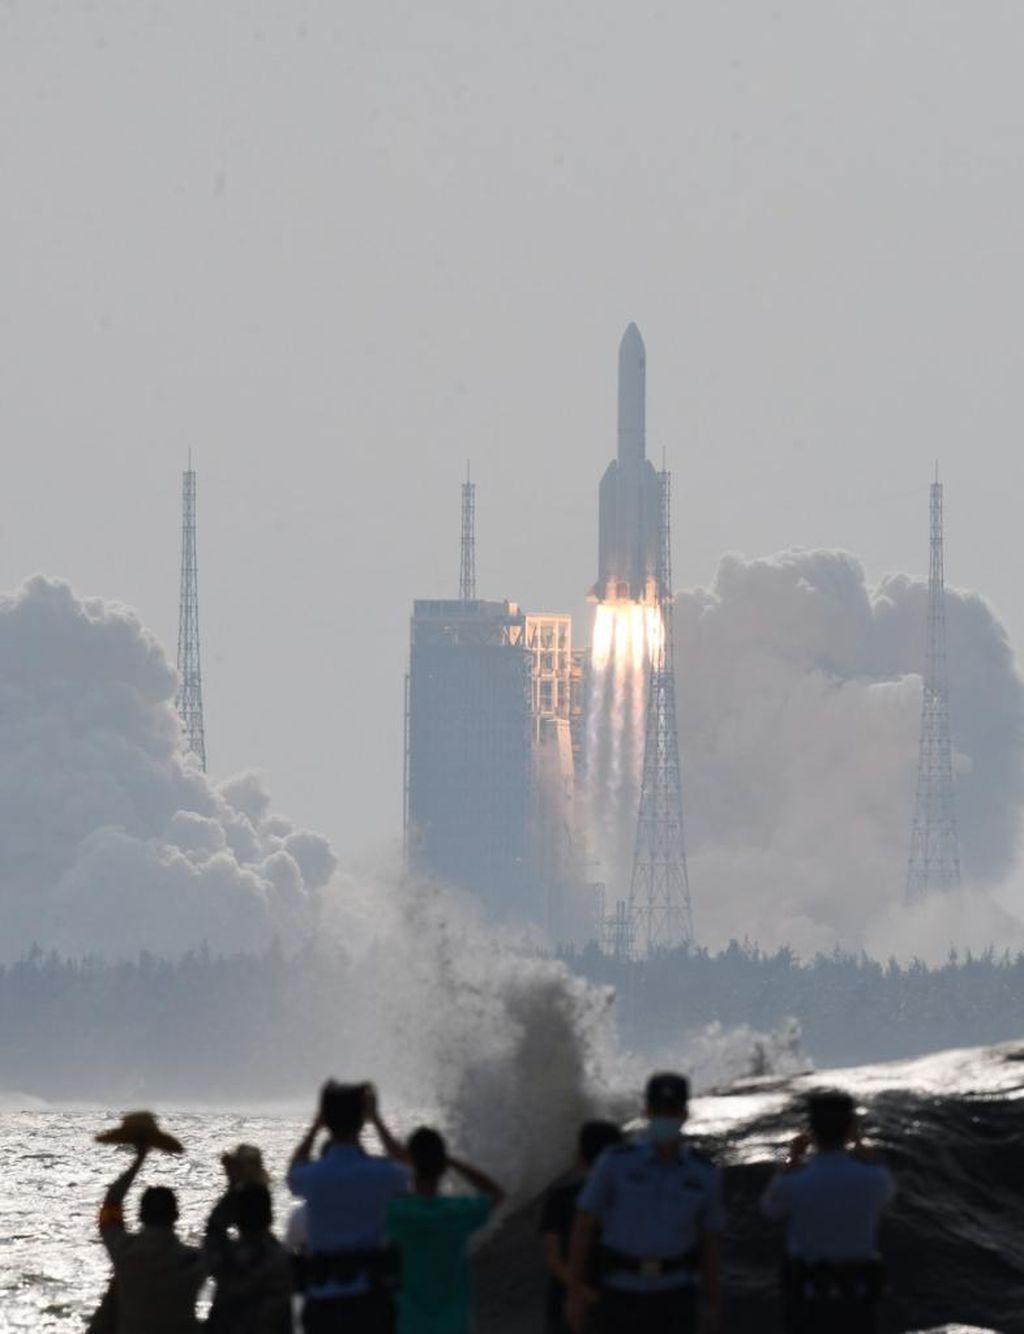 Roket peluncur China Long March 5B Y4 meluncur dari Bandar Antariksa Wenchang, Provinsi Hainan, China, pada 31 Oktober 2022. Roket peluncur ini hendak mengirimkan modul Mengtian yang merupakan bagian dari pembangunan stasiun luar angkasa China Tiangong.